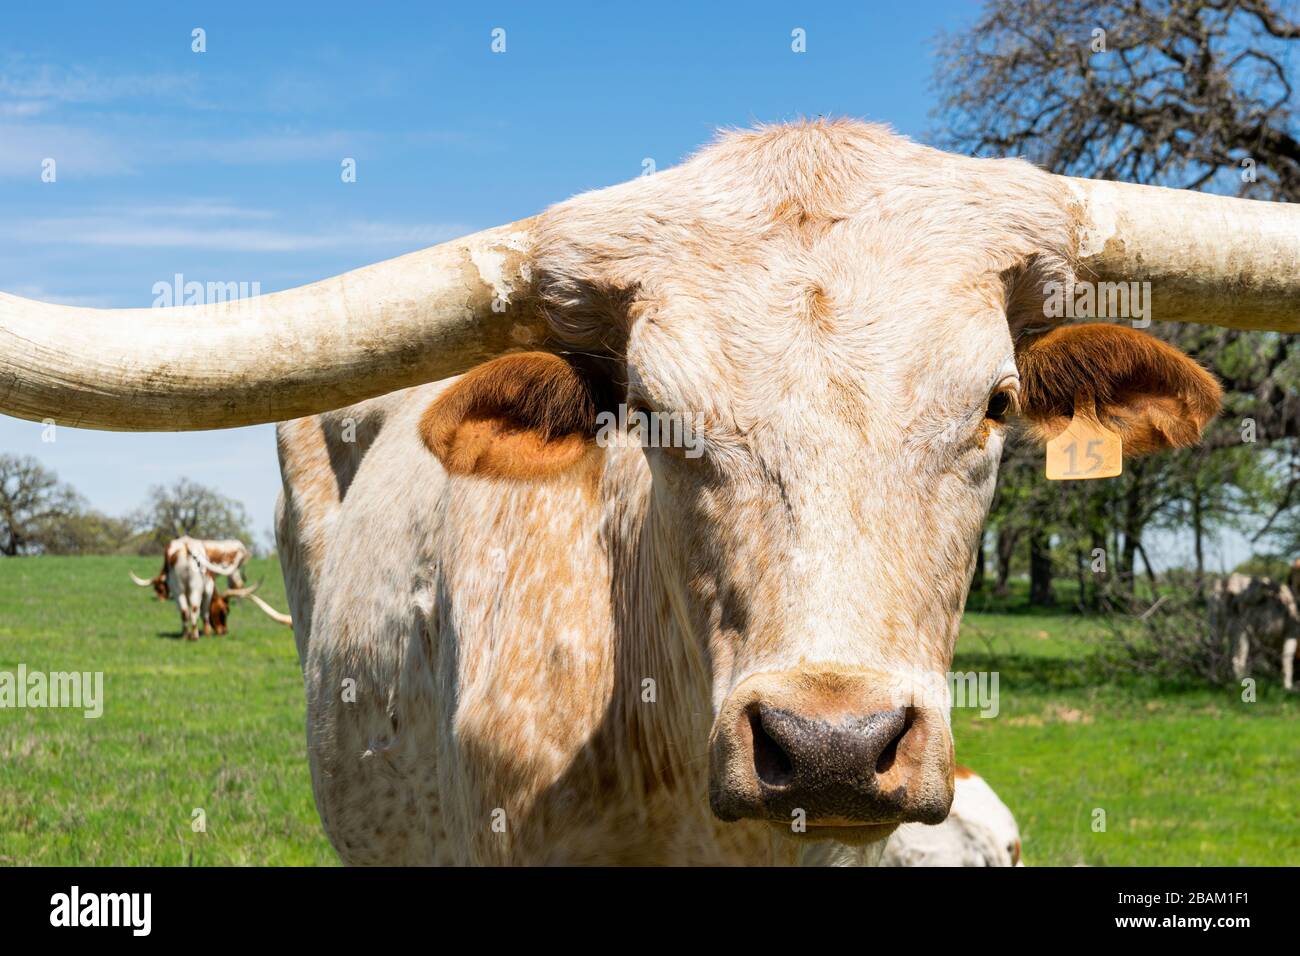 Nahaufnahme des Gesichts eines großen, weißen und braunen Longhorn-Stils mit orangefarbenen Ohren, langen Hörnern und sanften Augen, die in einer grünen Wiese mit OTH stehen Stockfoto